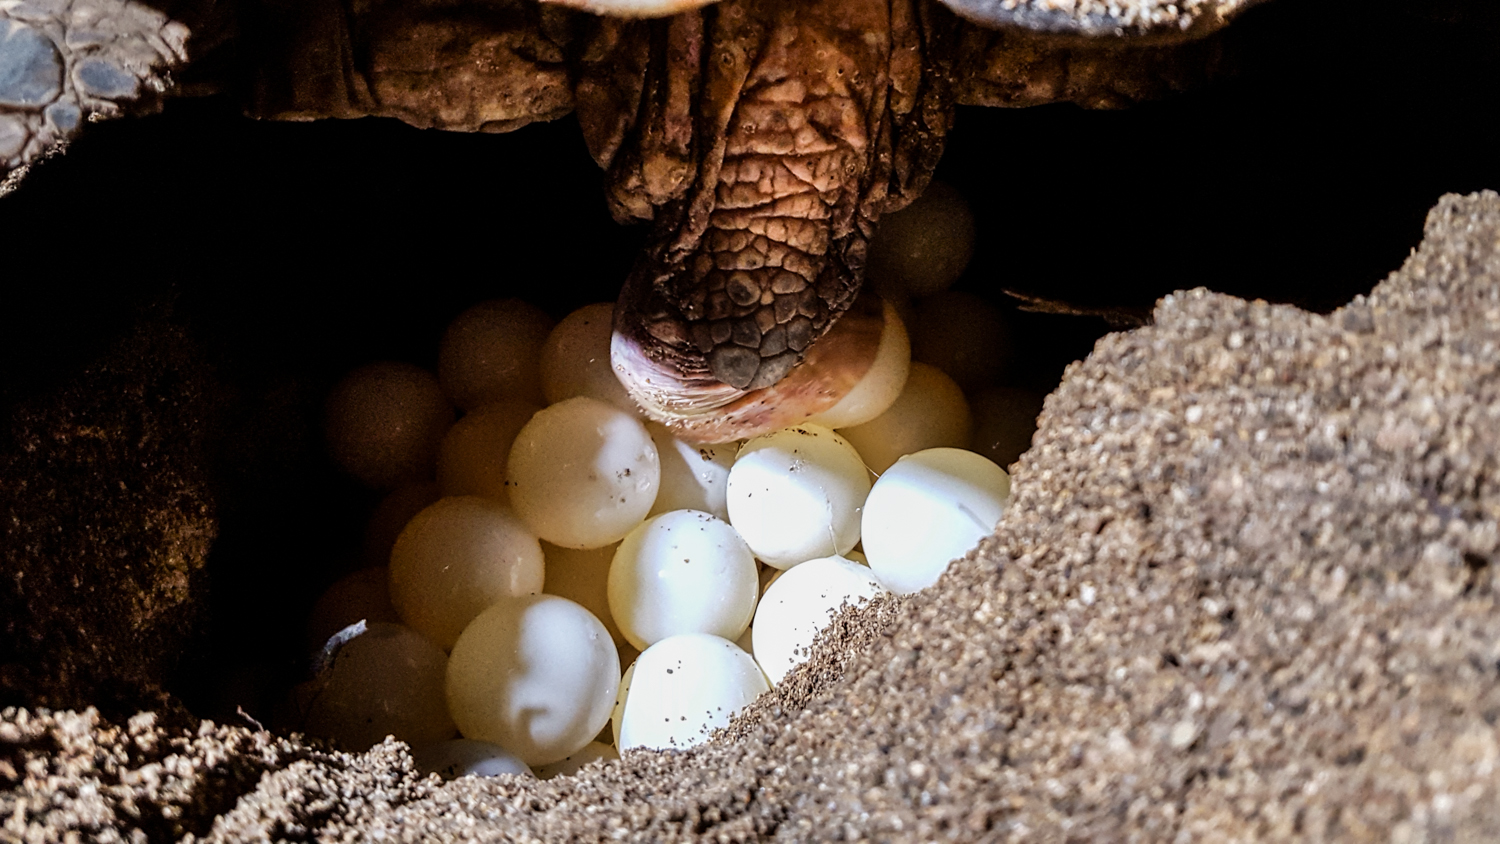 En 29 minutos Rafaela depositó 194 huevos.